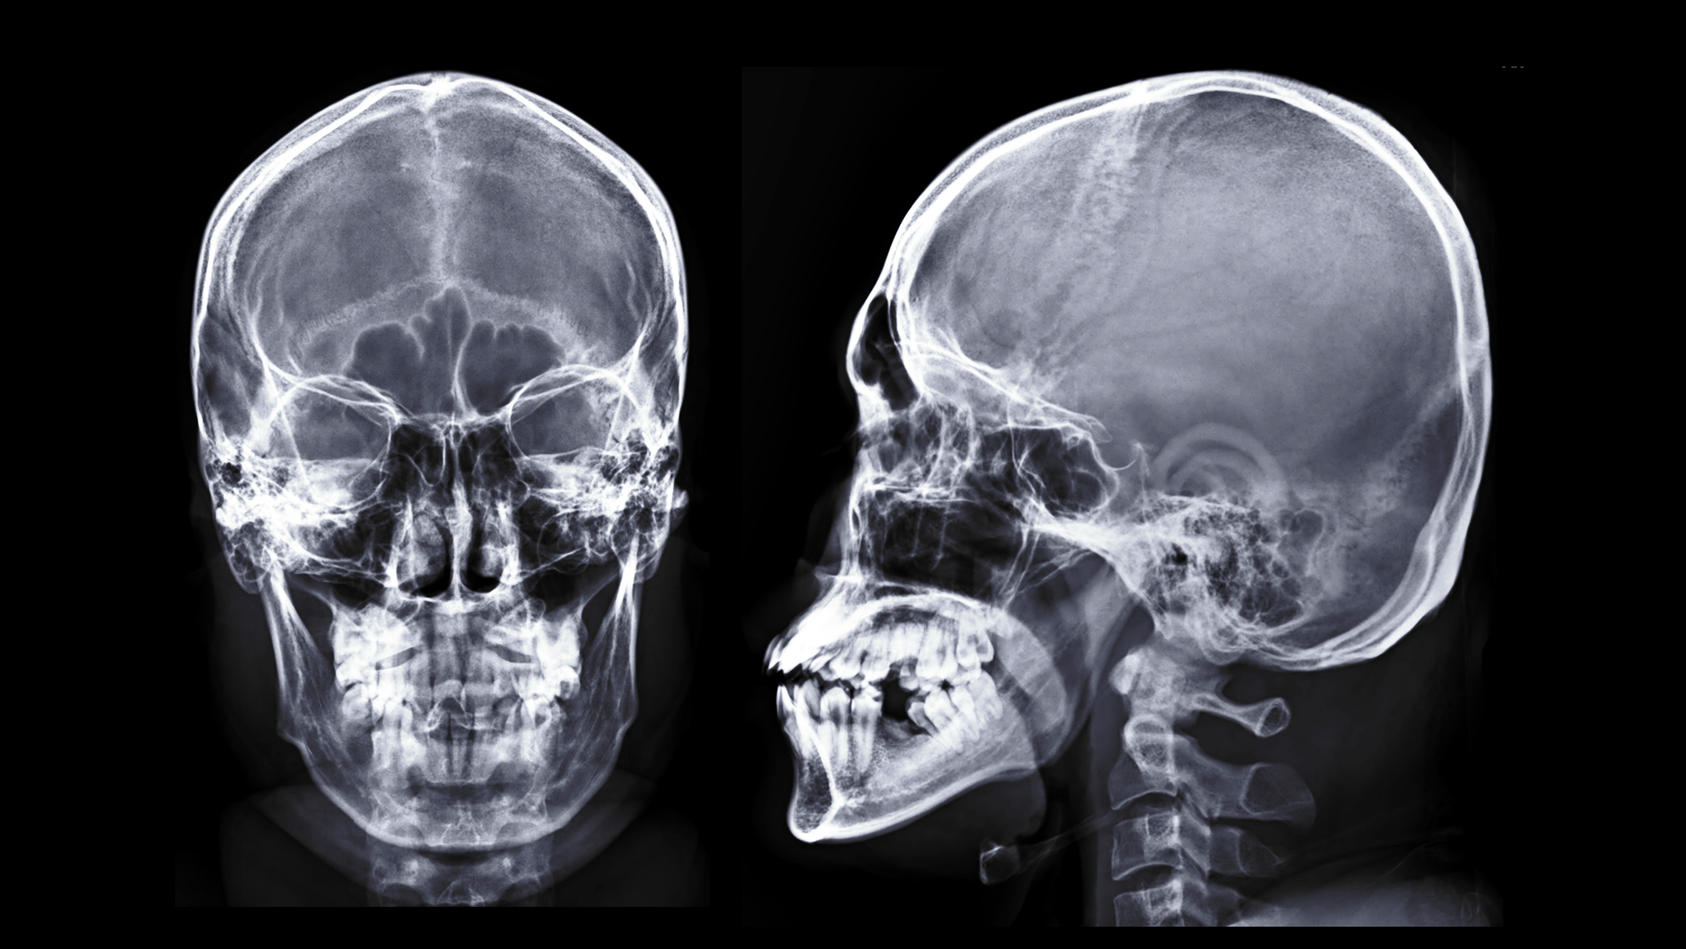 Röntgenbilder eines menschlichen Schädels